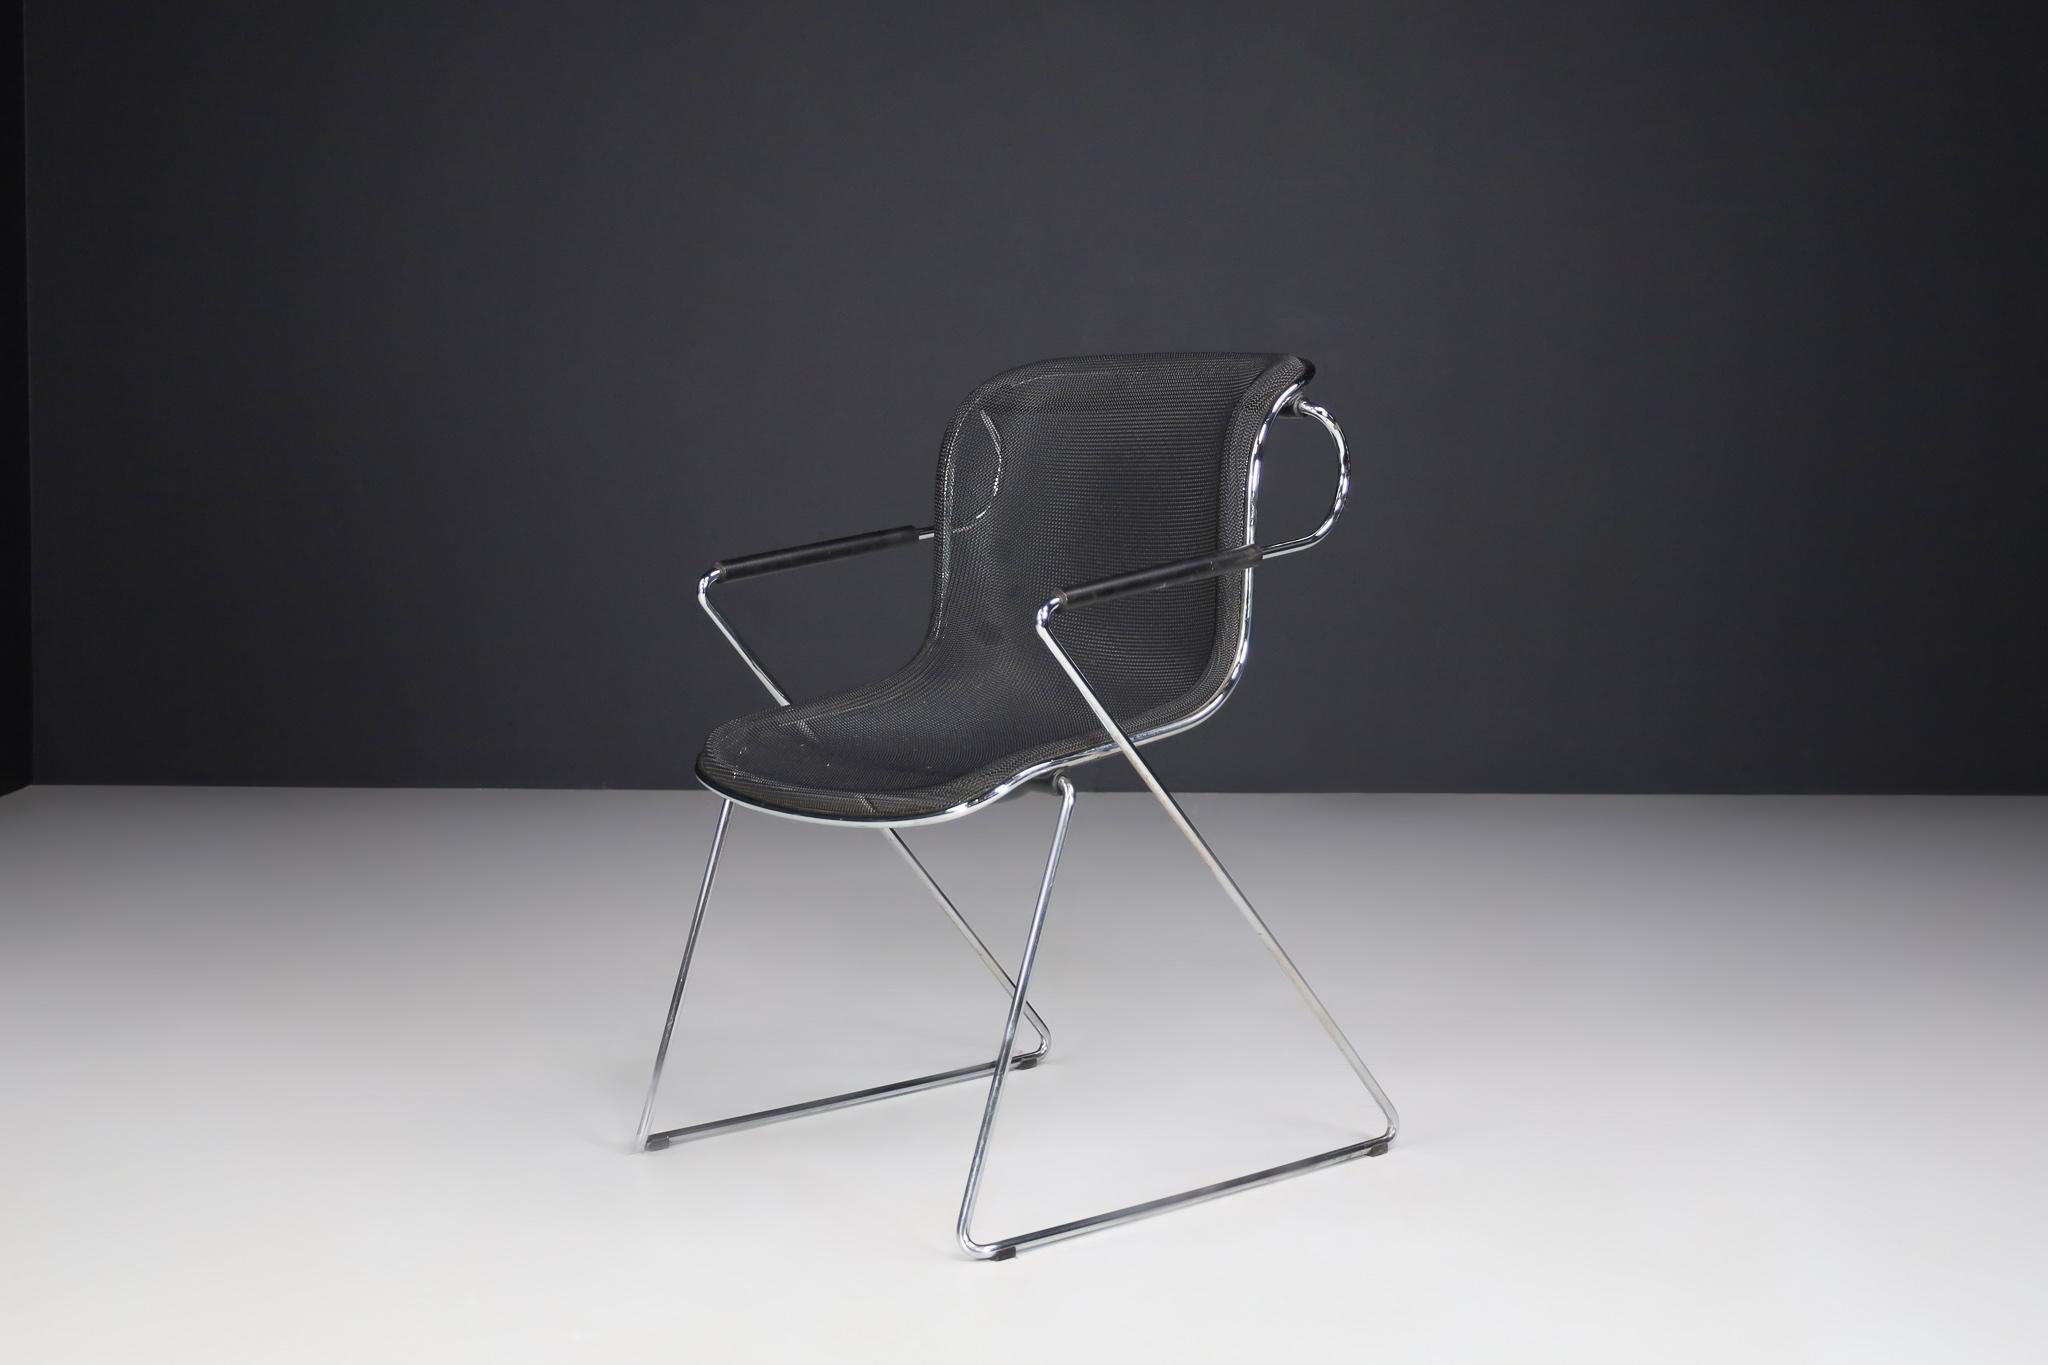 Ce fauteuil Penelope a été conçu en 1982 par Charles Pollock et produit par Castelli en Italie. Le châssis de cette chaise est en fil d'acier chromé. Pollock a choisi un fin treillis métallique recouvert de noir comme matériau pour la coque du